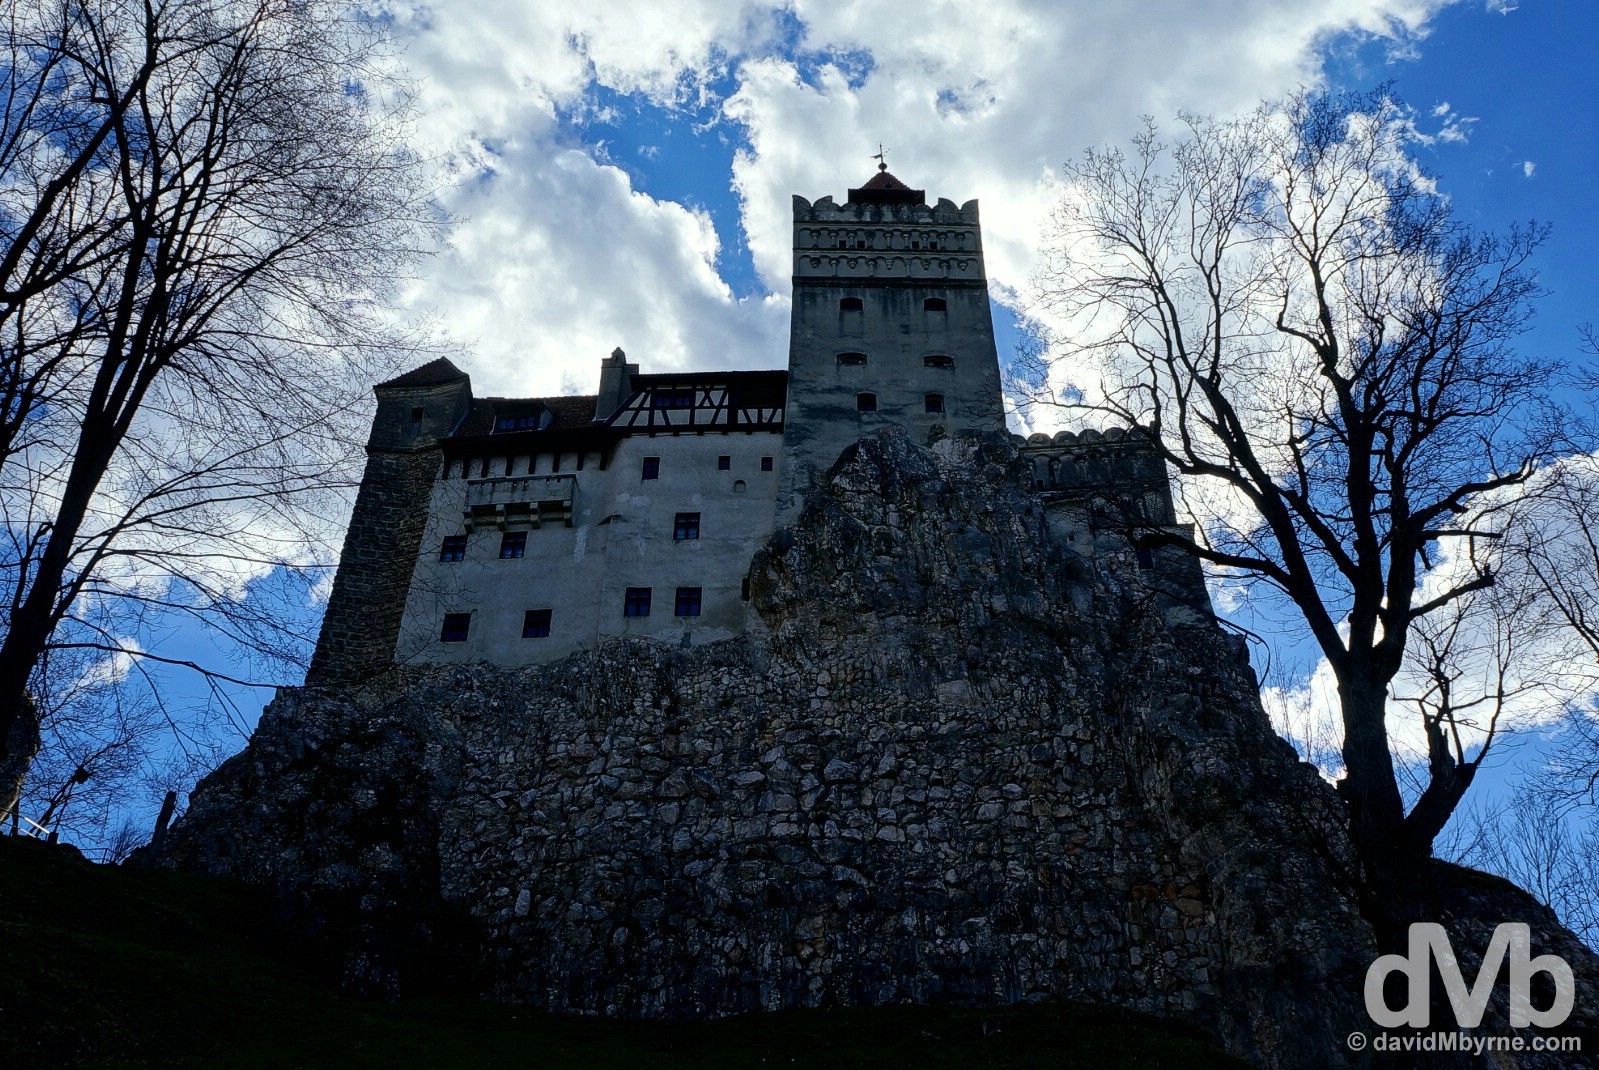 Bran Castle, Bran, Transylvania, Romania. April 2, 2015.